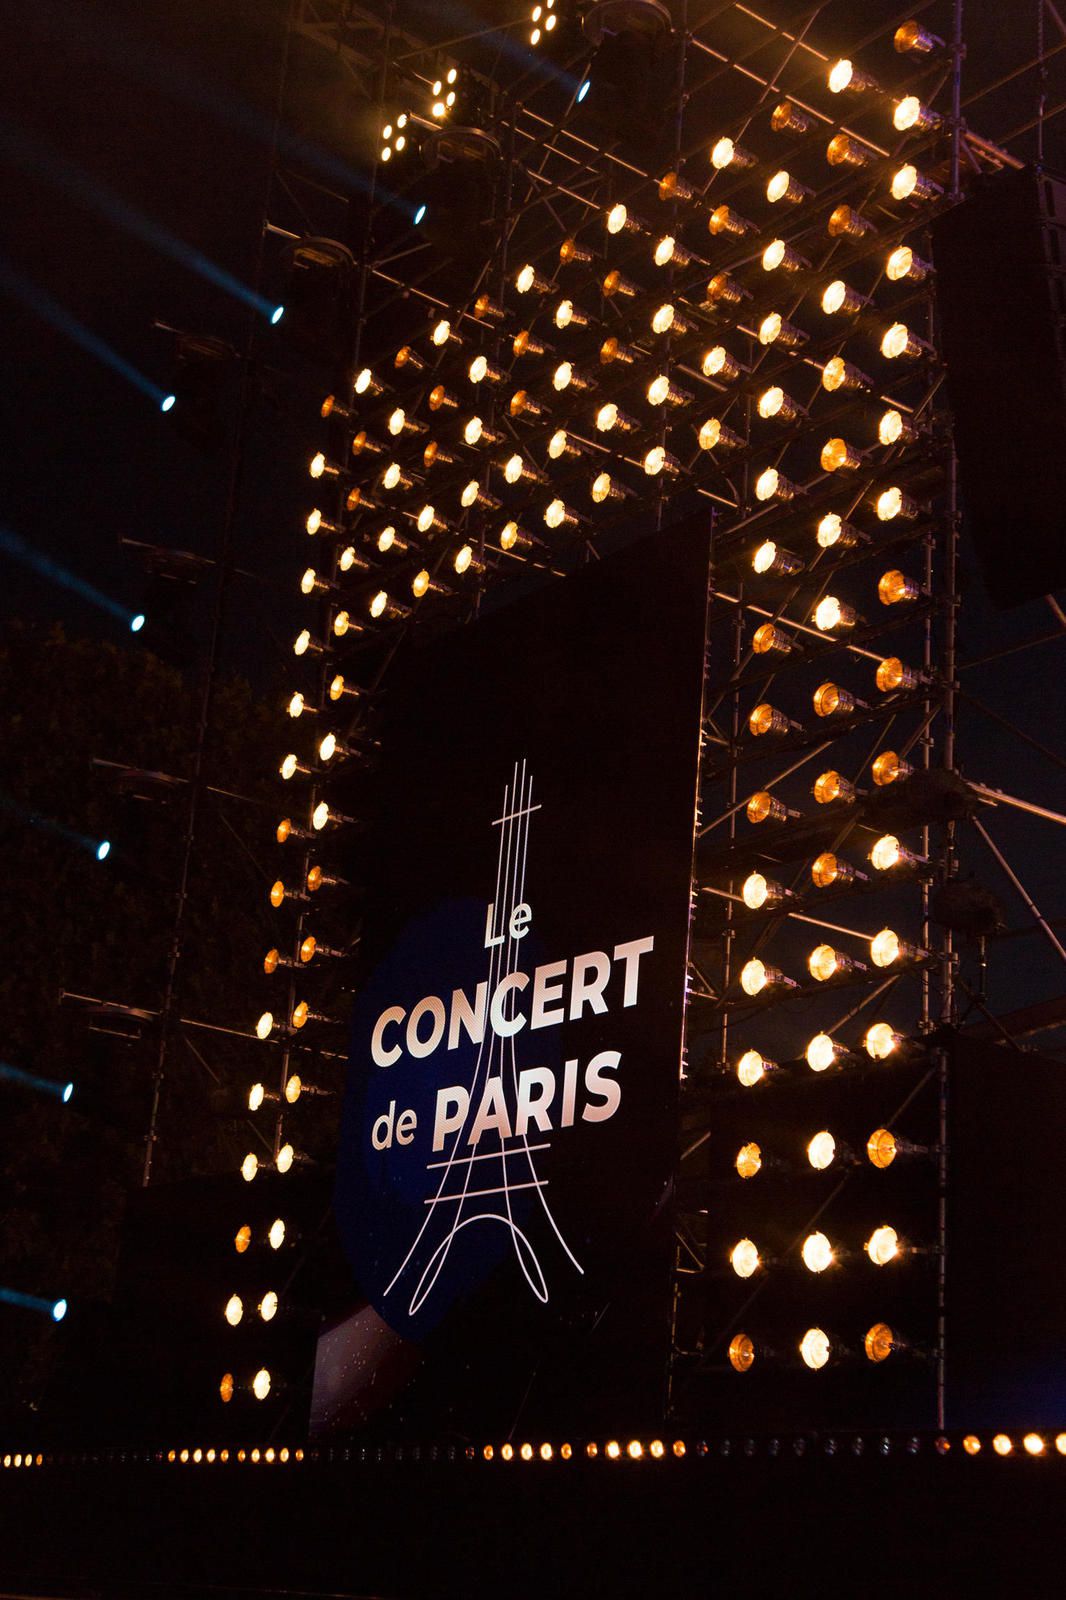 Programmation complète du Concert de Paris ce mardi 14 juillet sur France 2 et France Inter (airs et artistes).